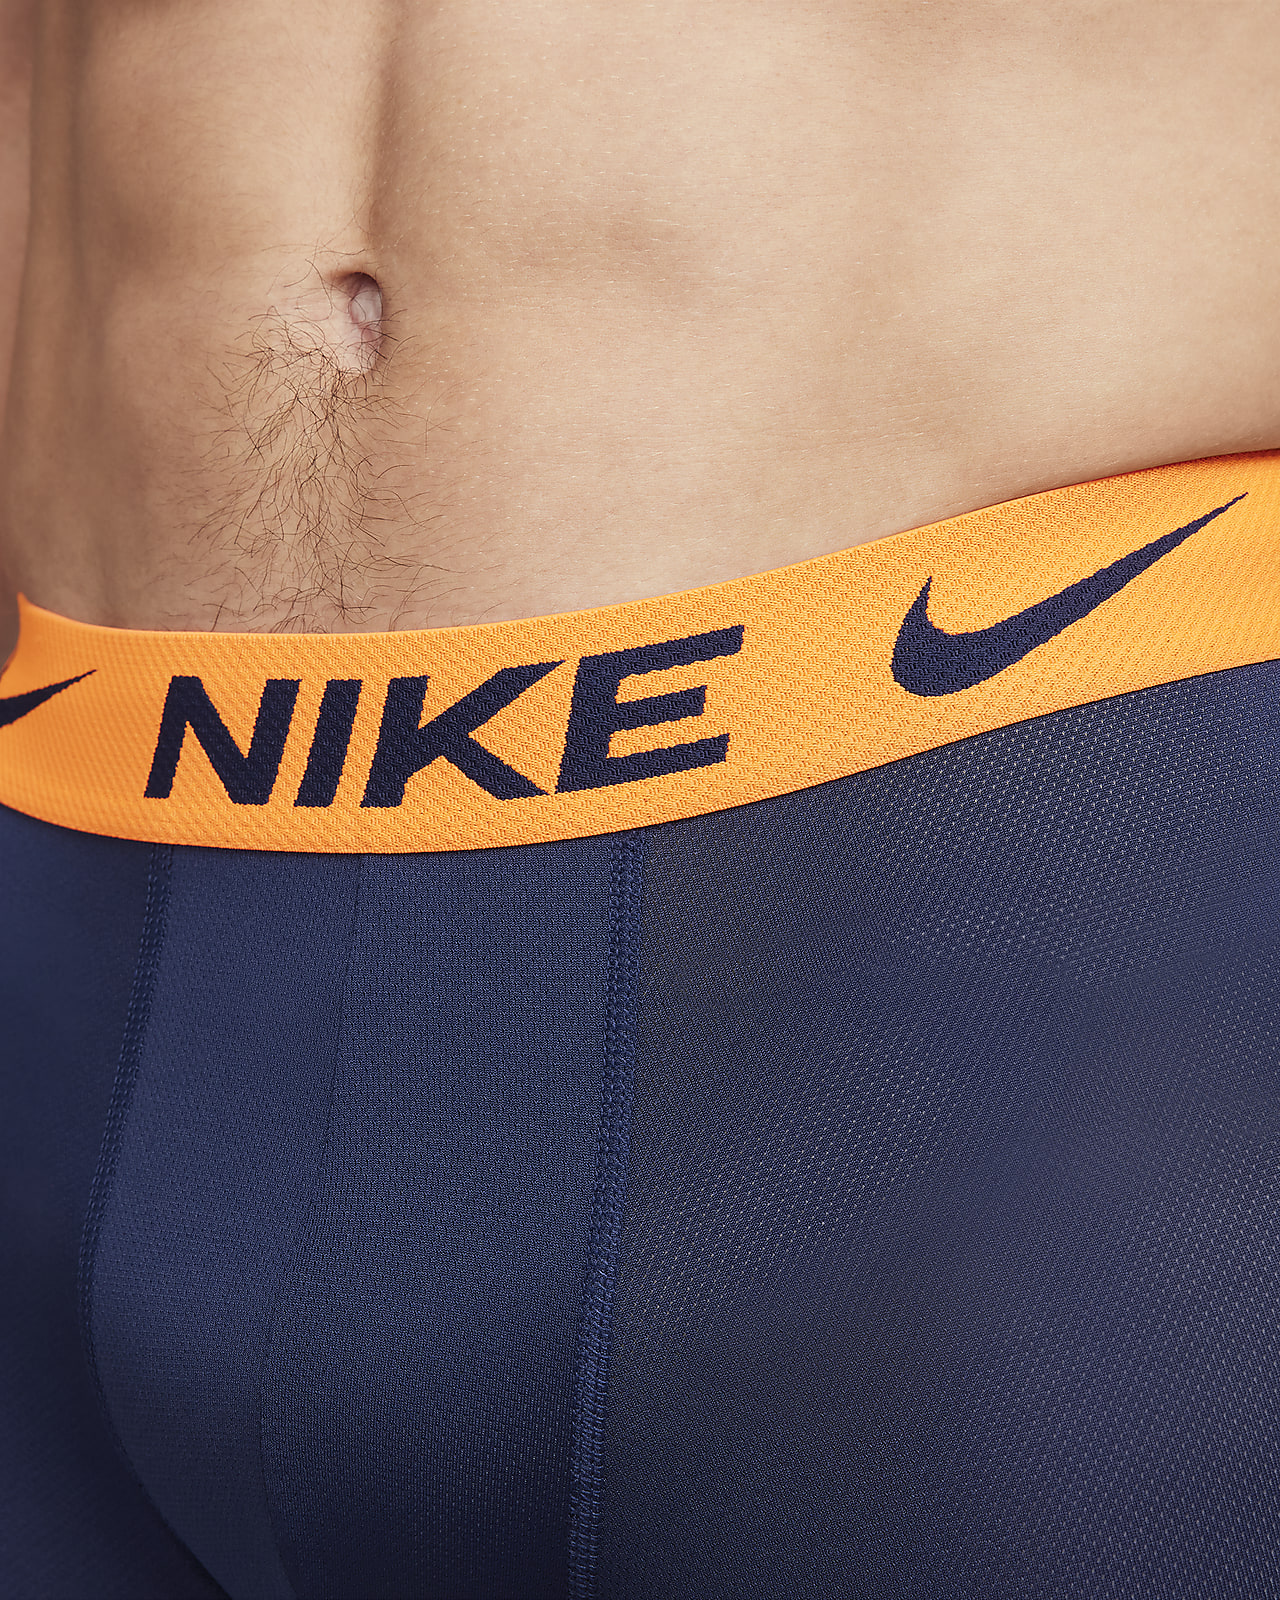 La mejor ropa interior de Nike para hombre. Nike MX